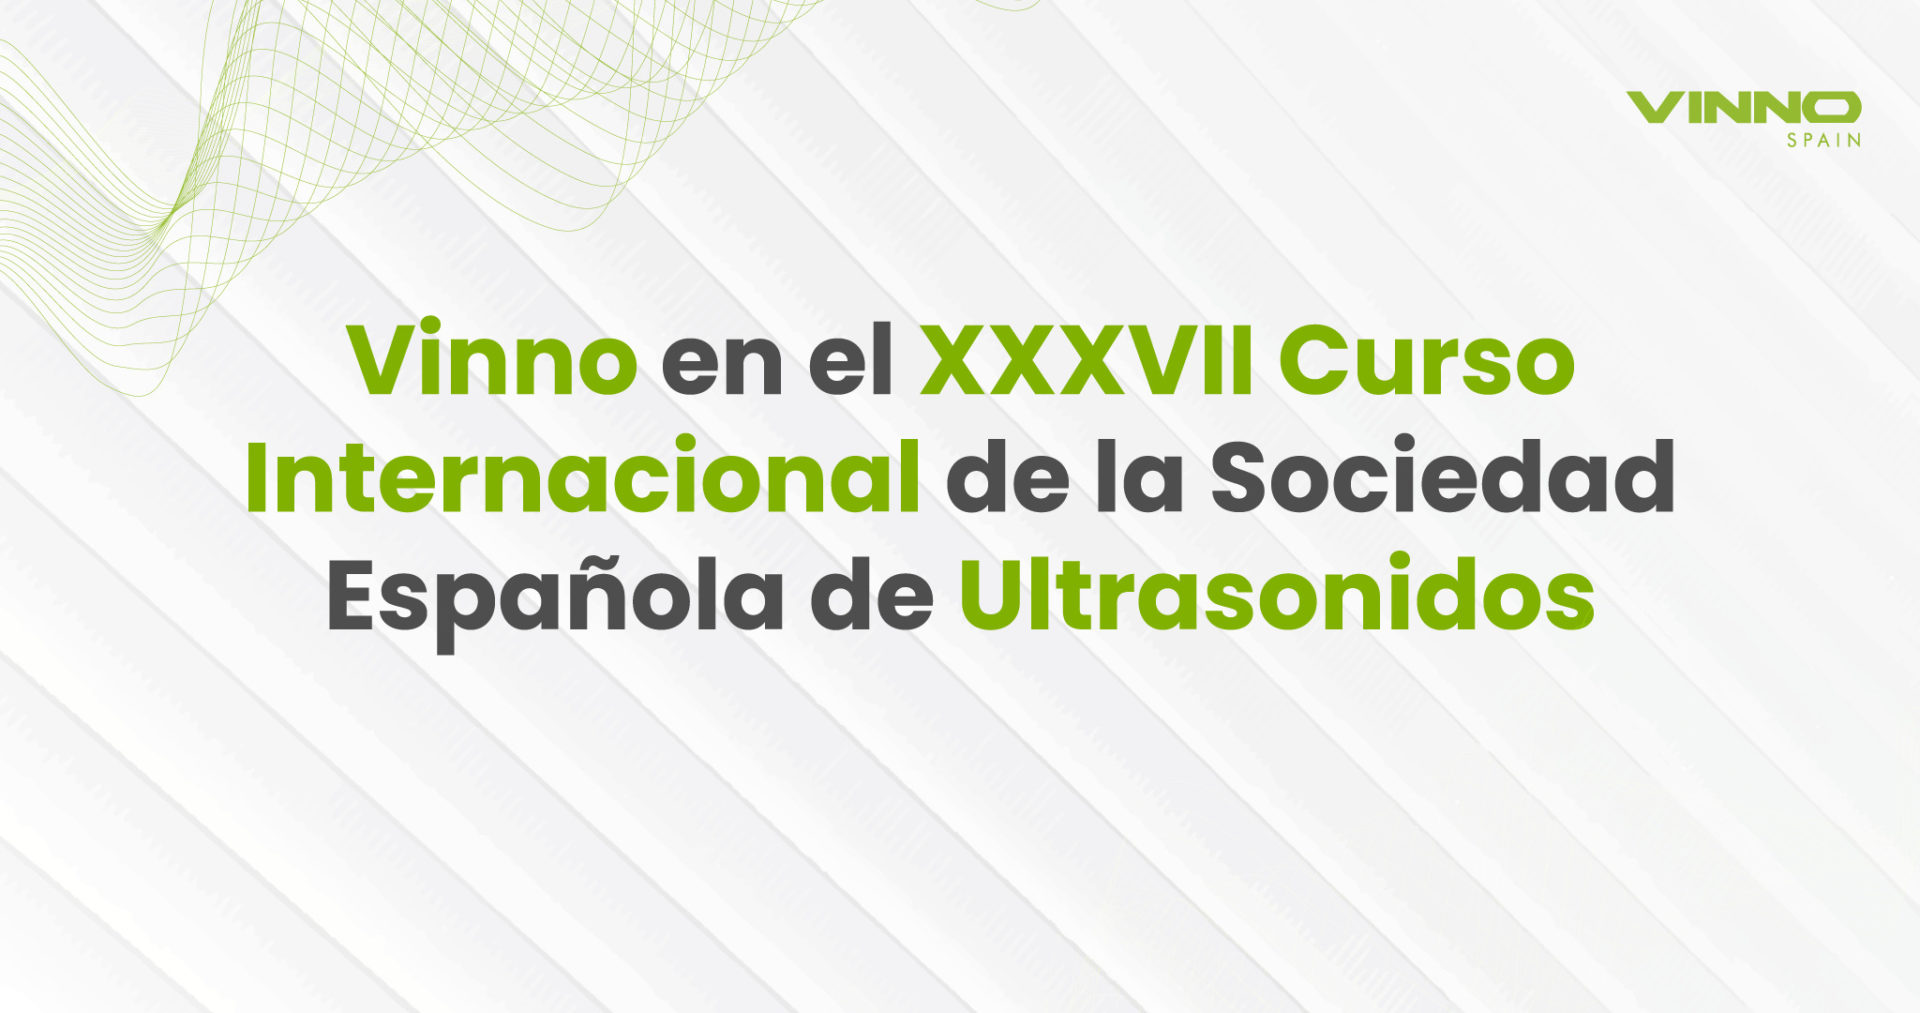 Vinno en el XXXVII Curso Internacional de la Sociedad Española de Ultrasonidos